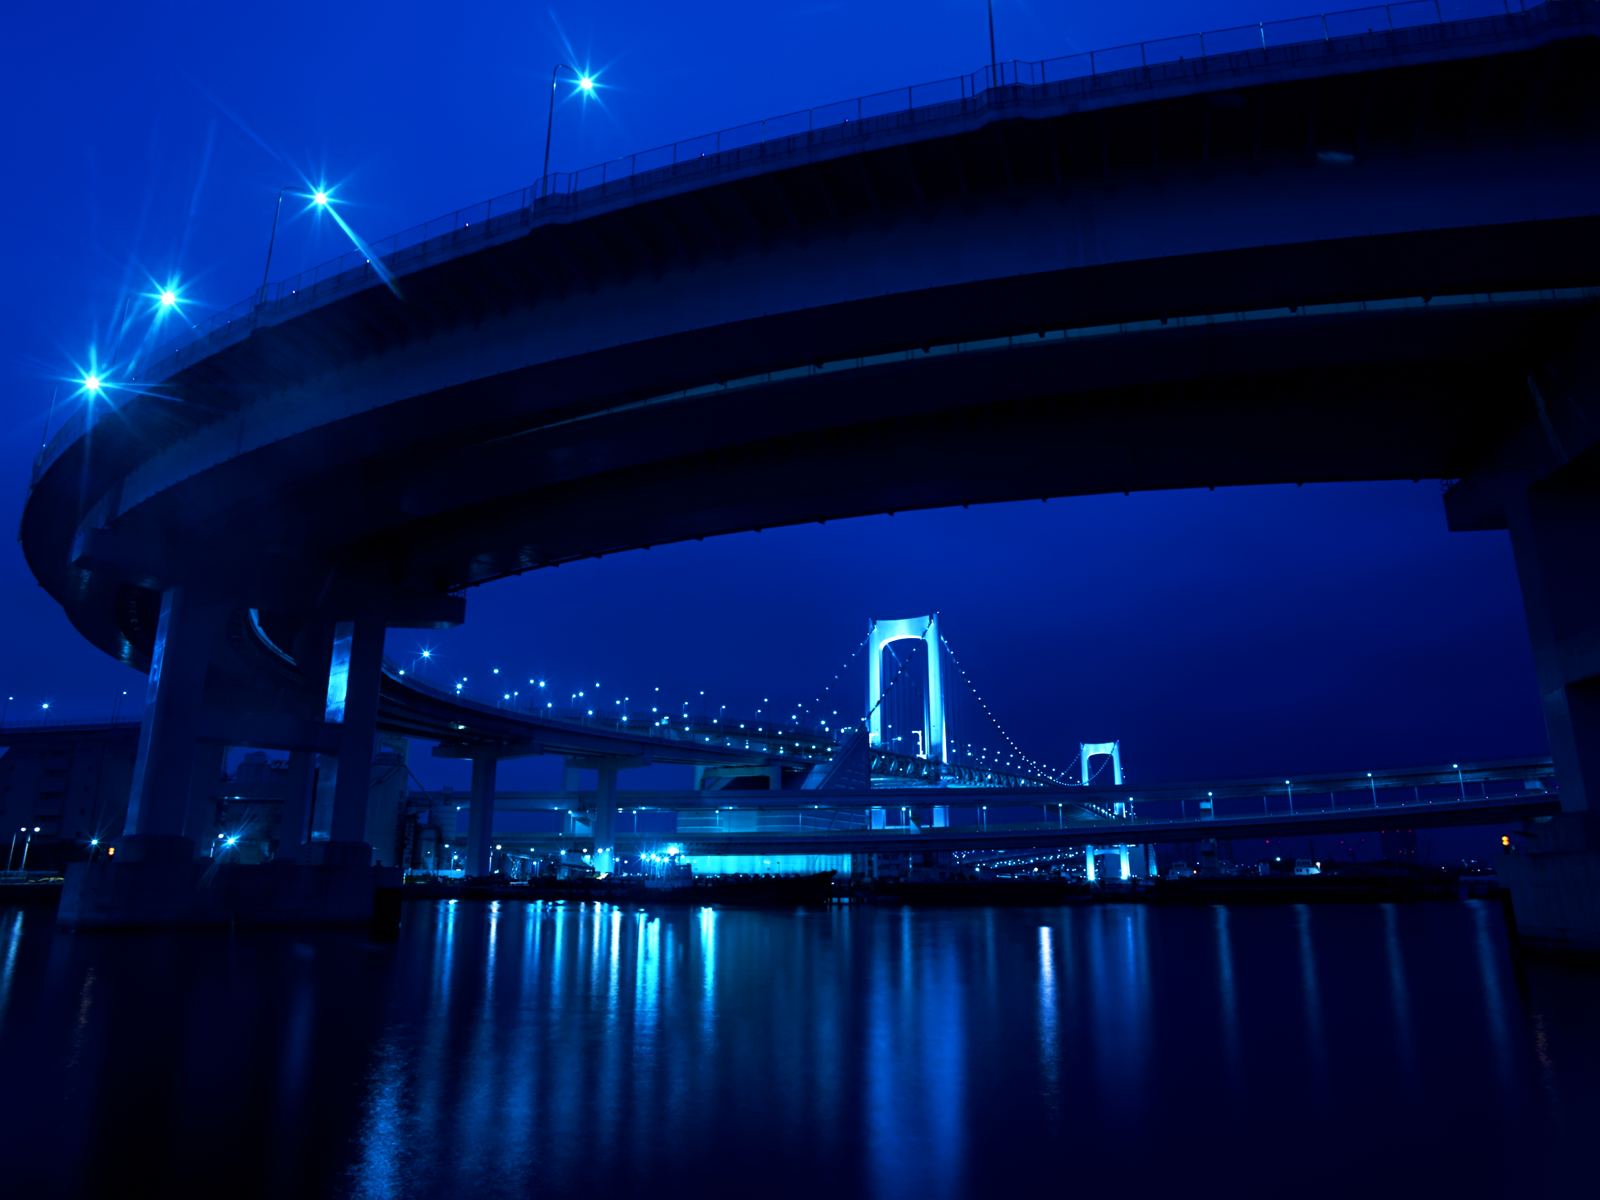 https://blogger.googleusercontent.com/img/b/R29vZ2xl/AVvXsEgwmg8rU52rHHwvVvJu7QT-Rc1Se0Ghv7CeASy5IUHB8BcyHyV1vY6X1I77MCp69Kyi8UcLlXqq2BZArYtKrm4xCxO0W8FZF84NBD73qPUn6PvmpjtFFzAmZeLf82OOrqxA1TExiFcLe4ML/s1600/City+Bridge+Blue+Skyline+walp+TLG.png